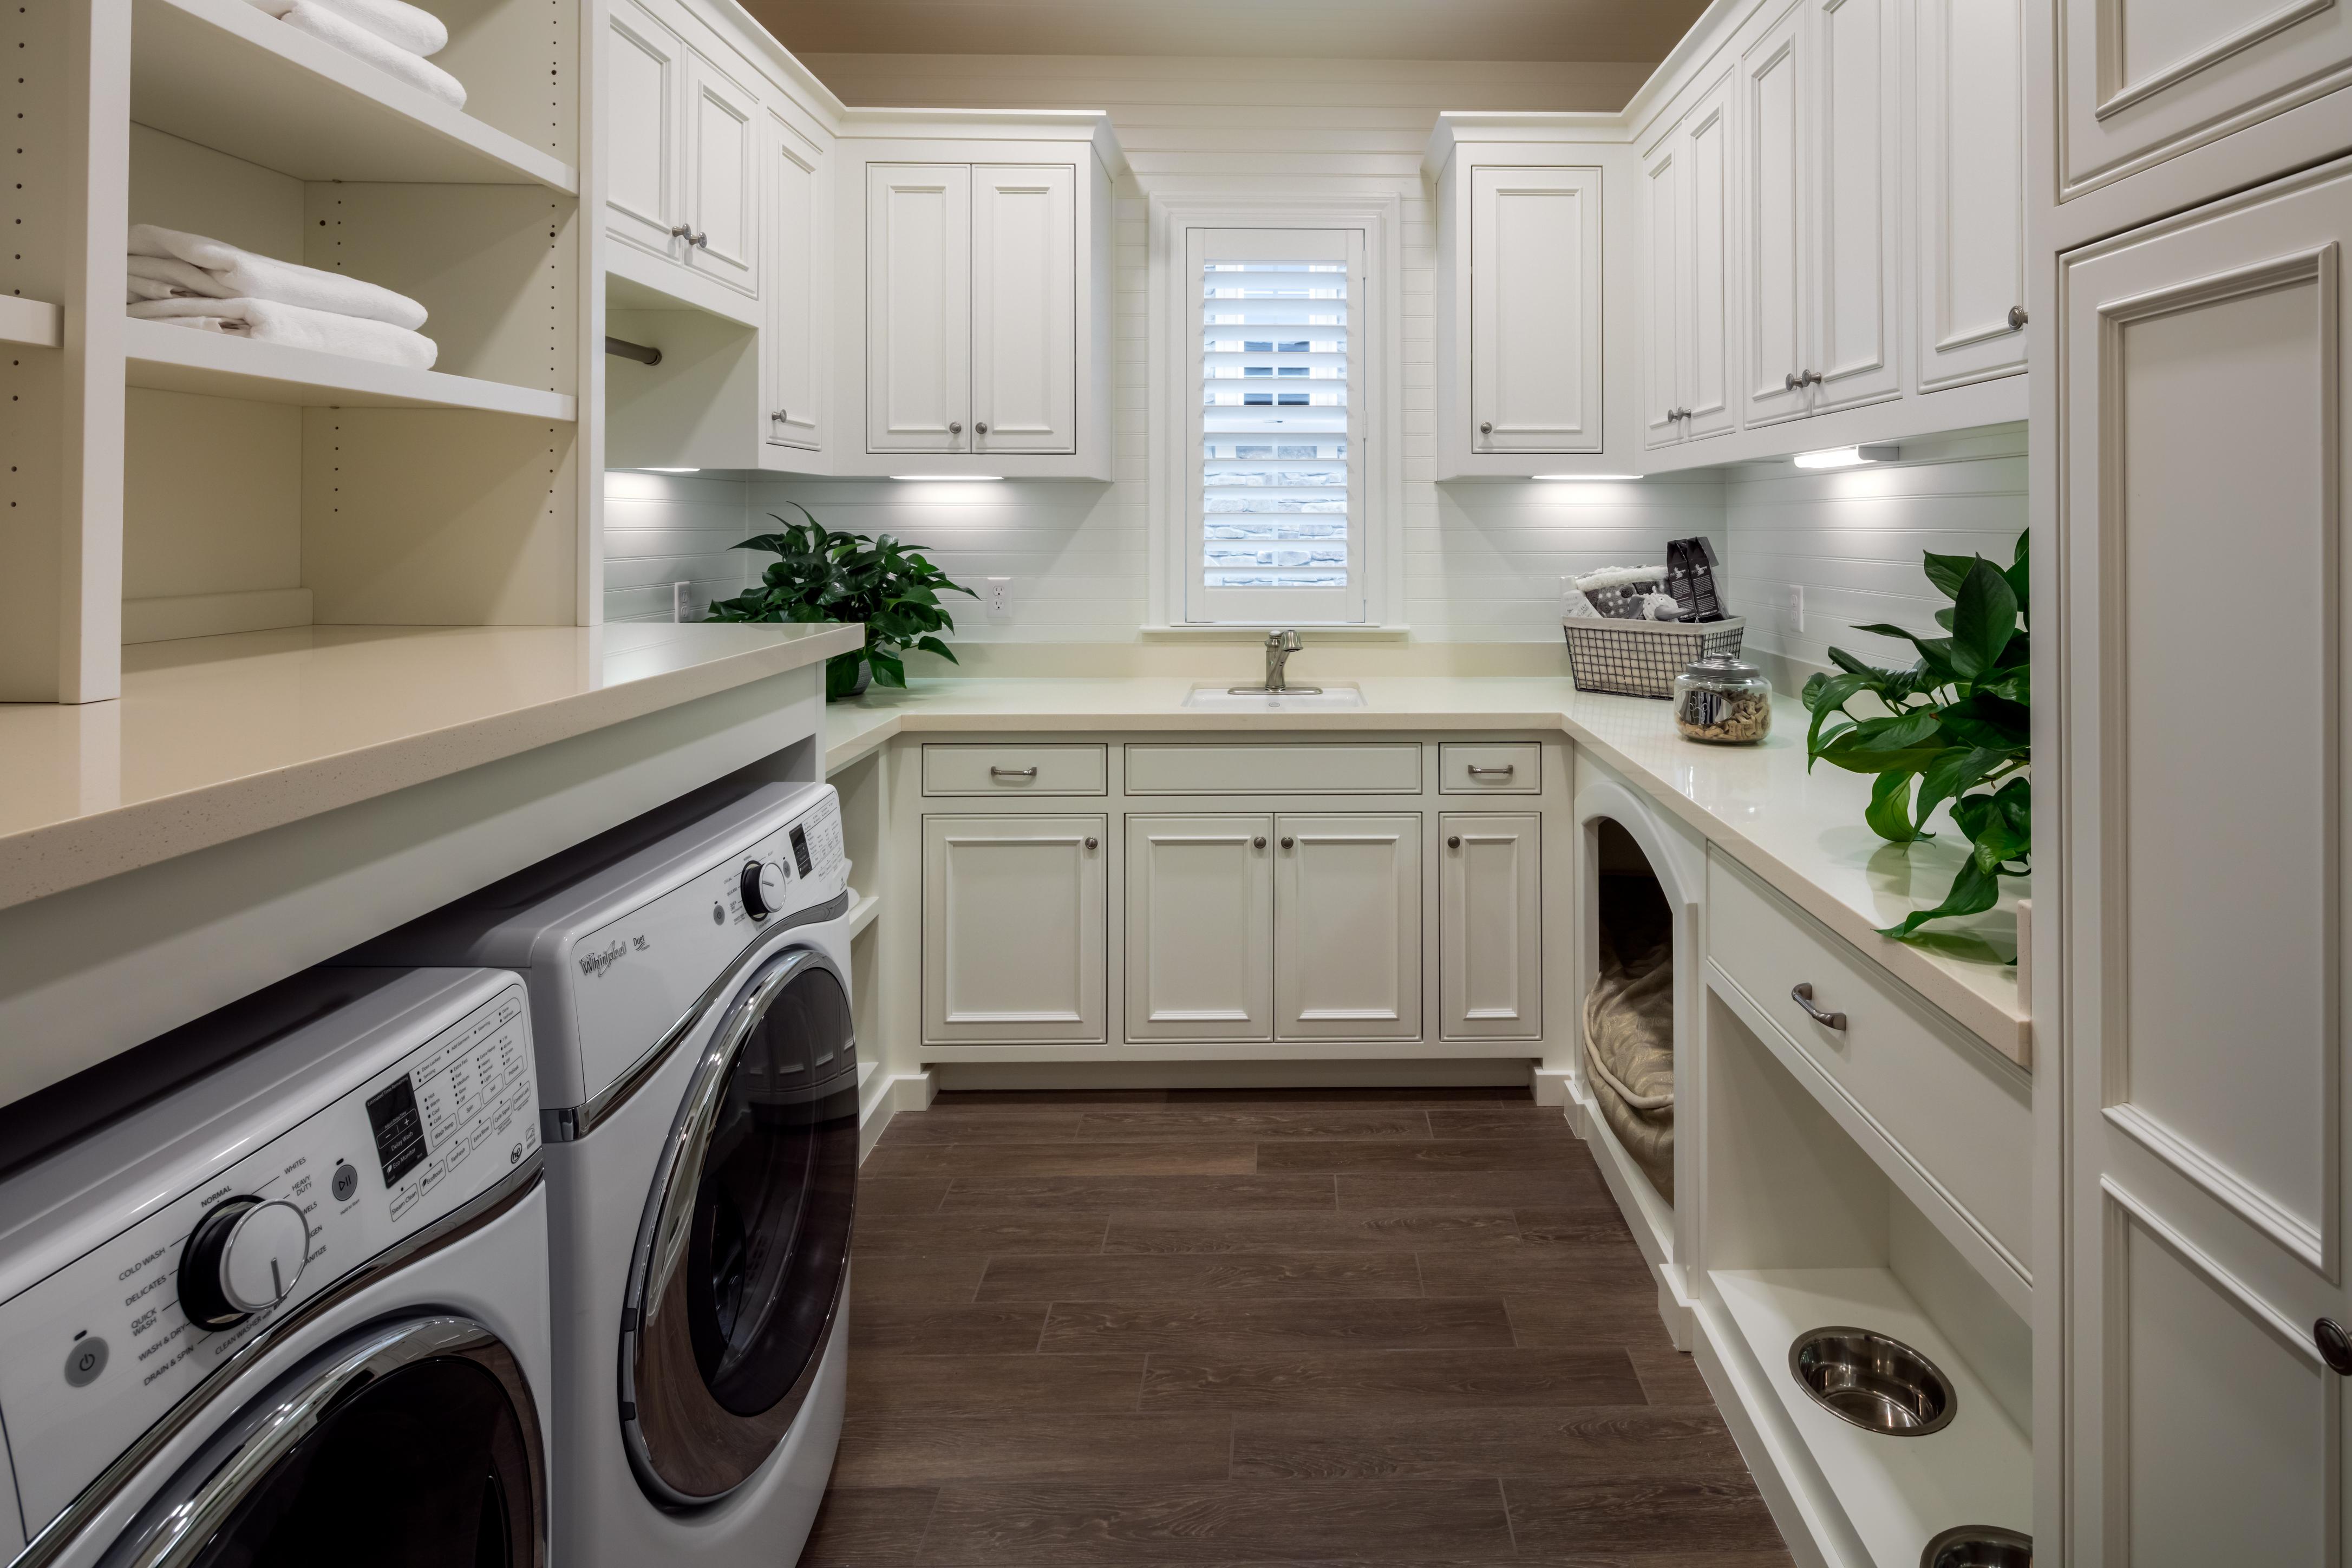 Laundry Area Design Ideas - BEST HOME DESIGN IDEAS